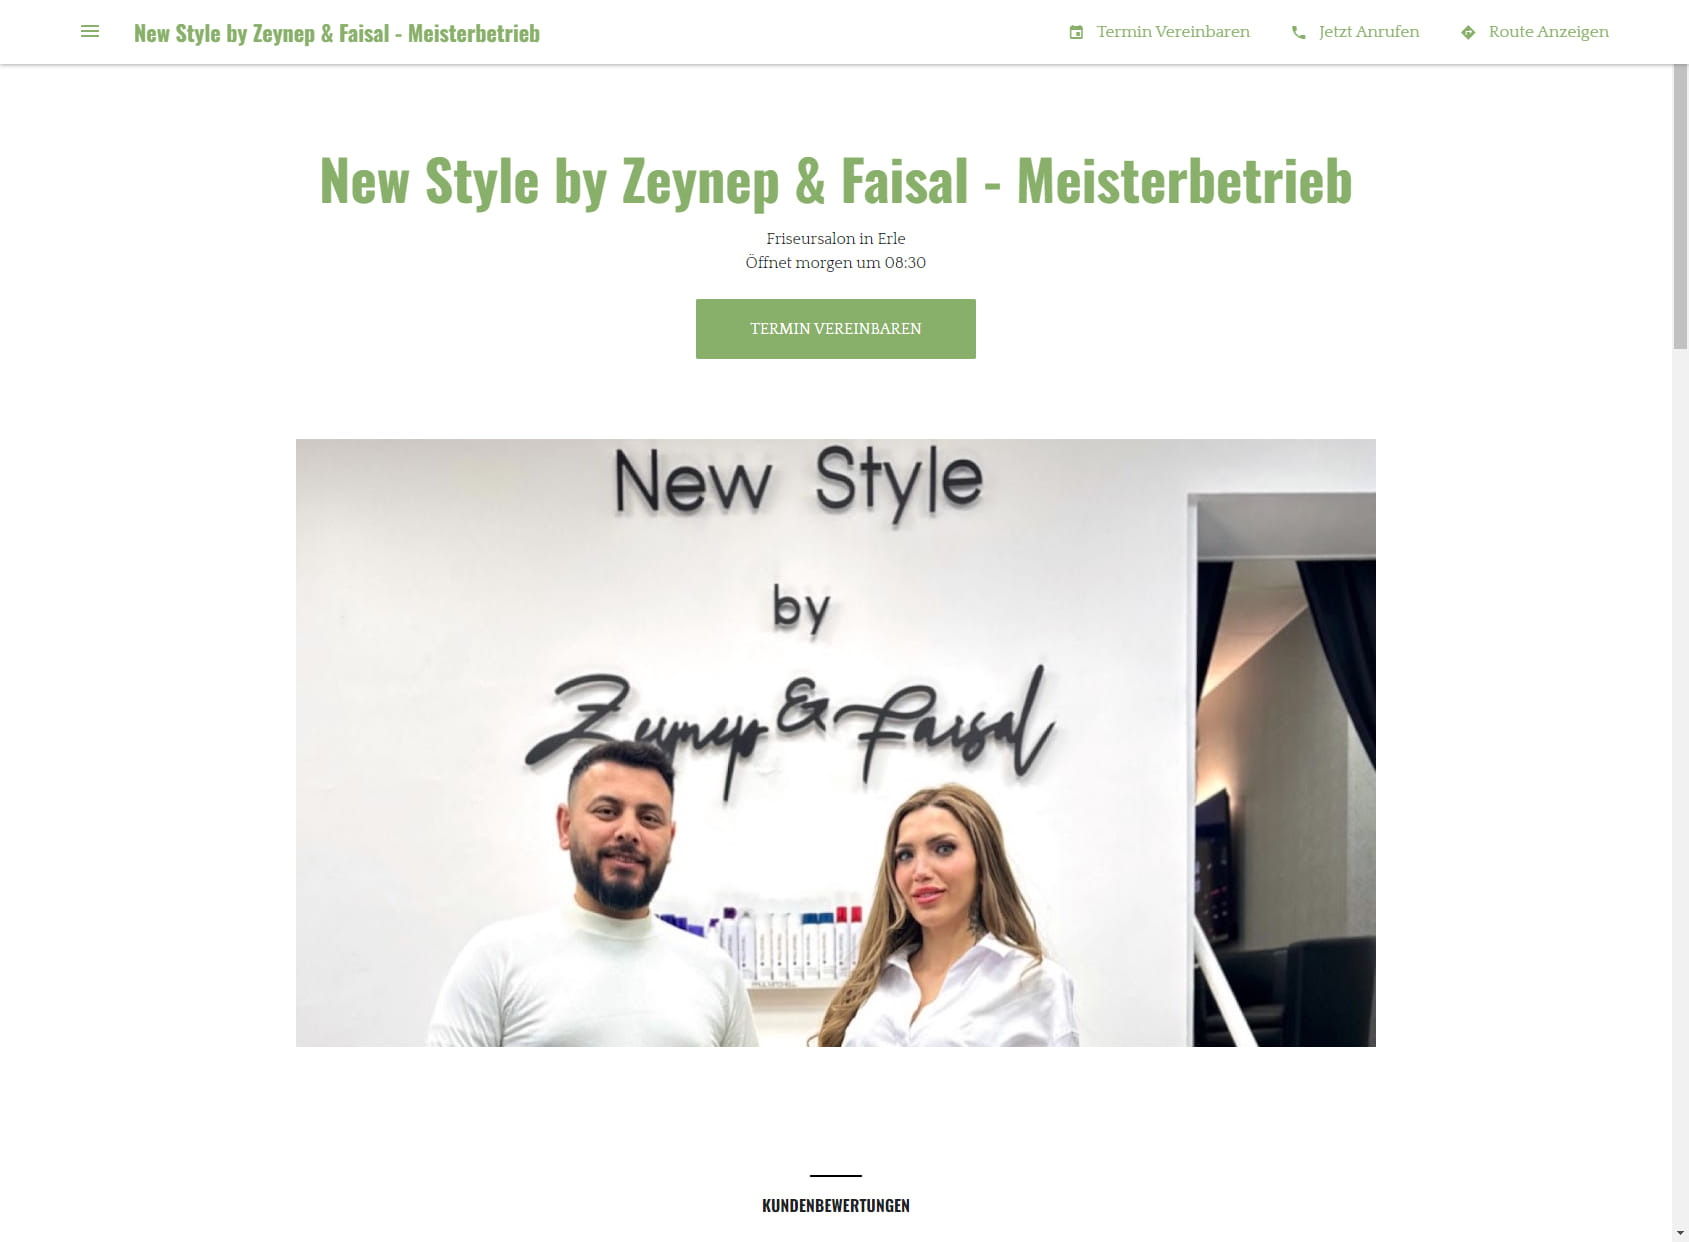 New Style by Zeynep & Faisal - Meisterbetrieb